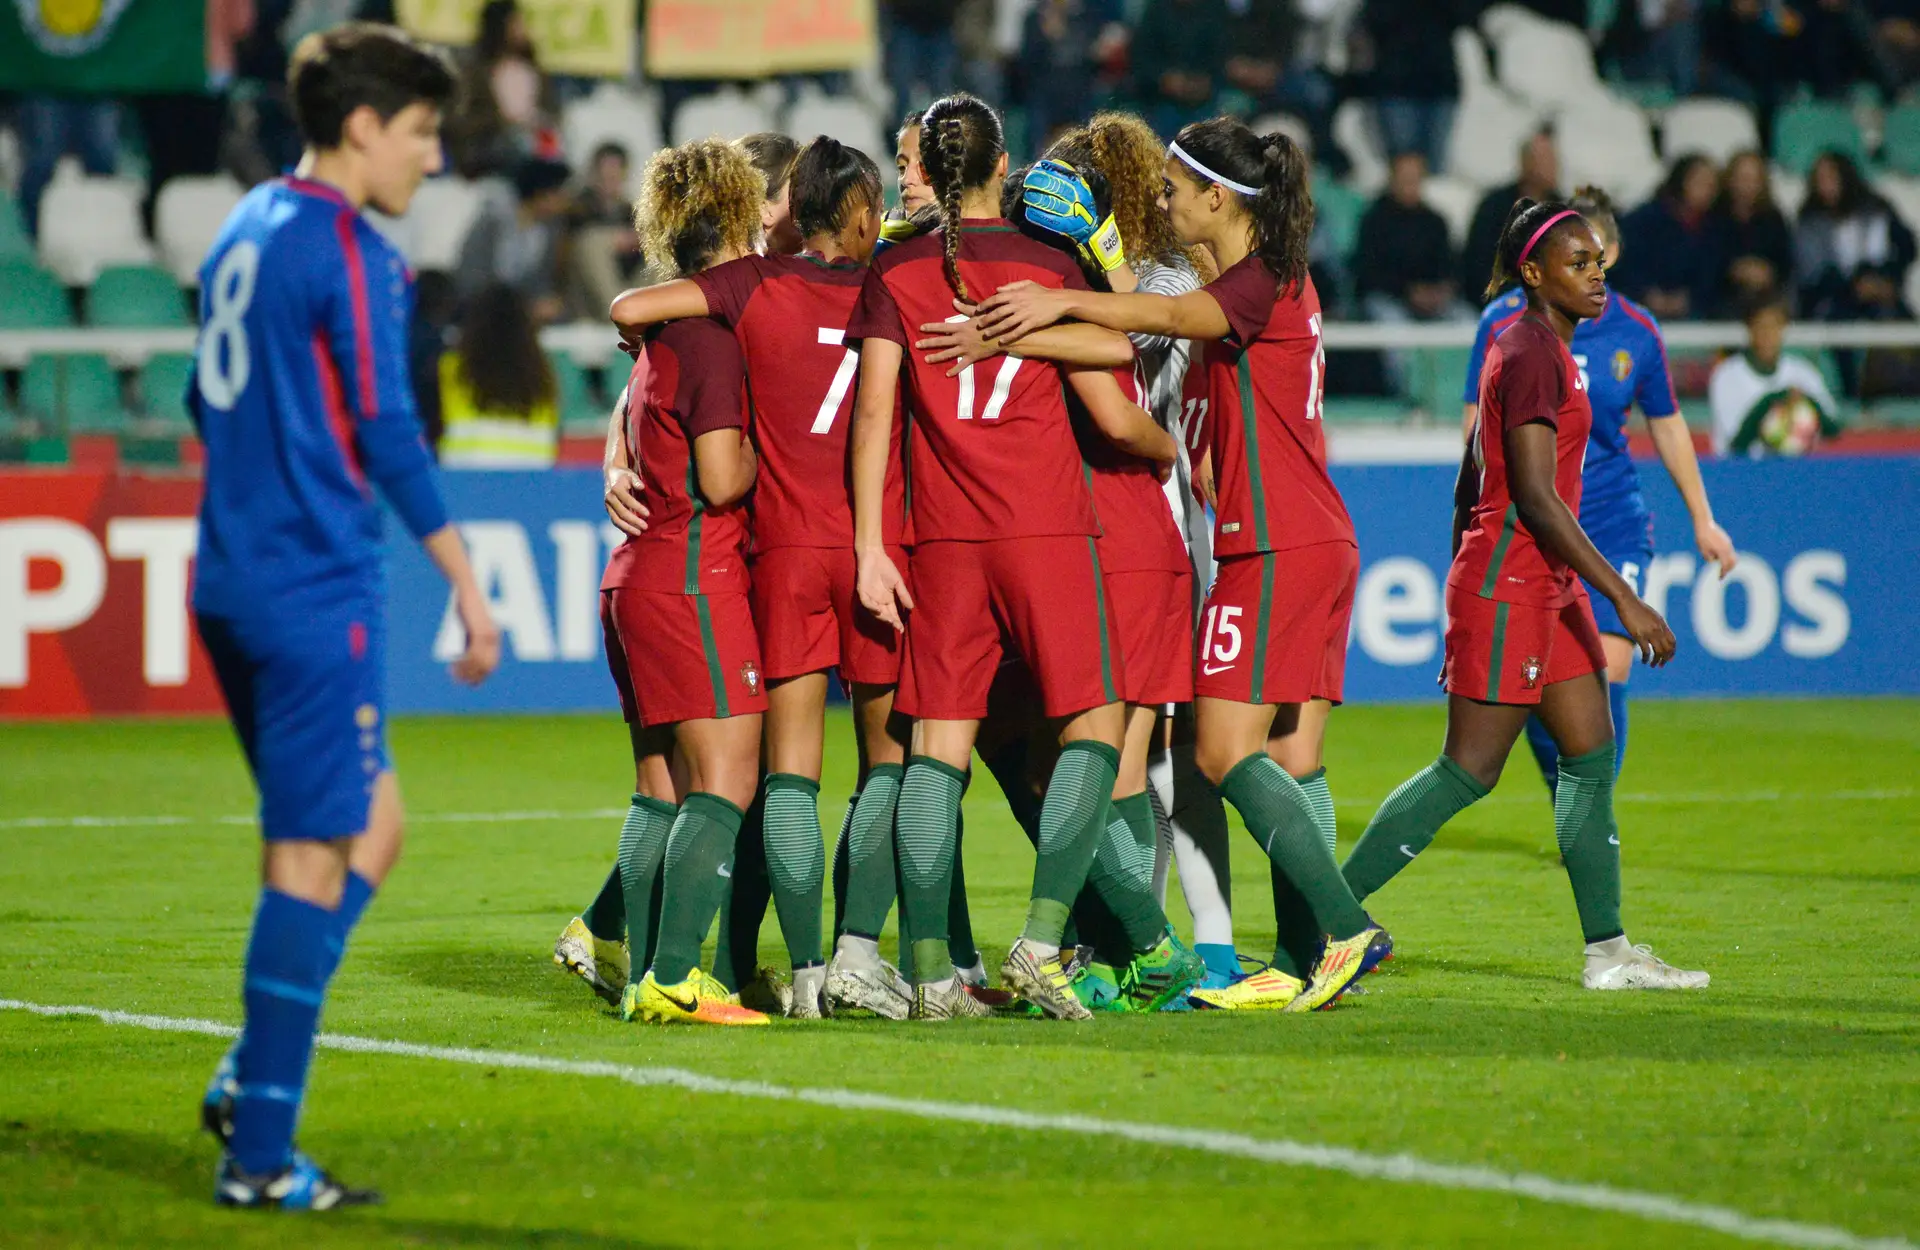 A seleção feminina de futebol venceu a Moldávia por 8-0, num jogo no Estádio do Bonfim, em Setúbal, de apuramento para o Mundial 2019.